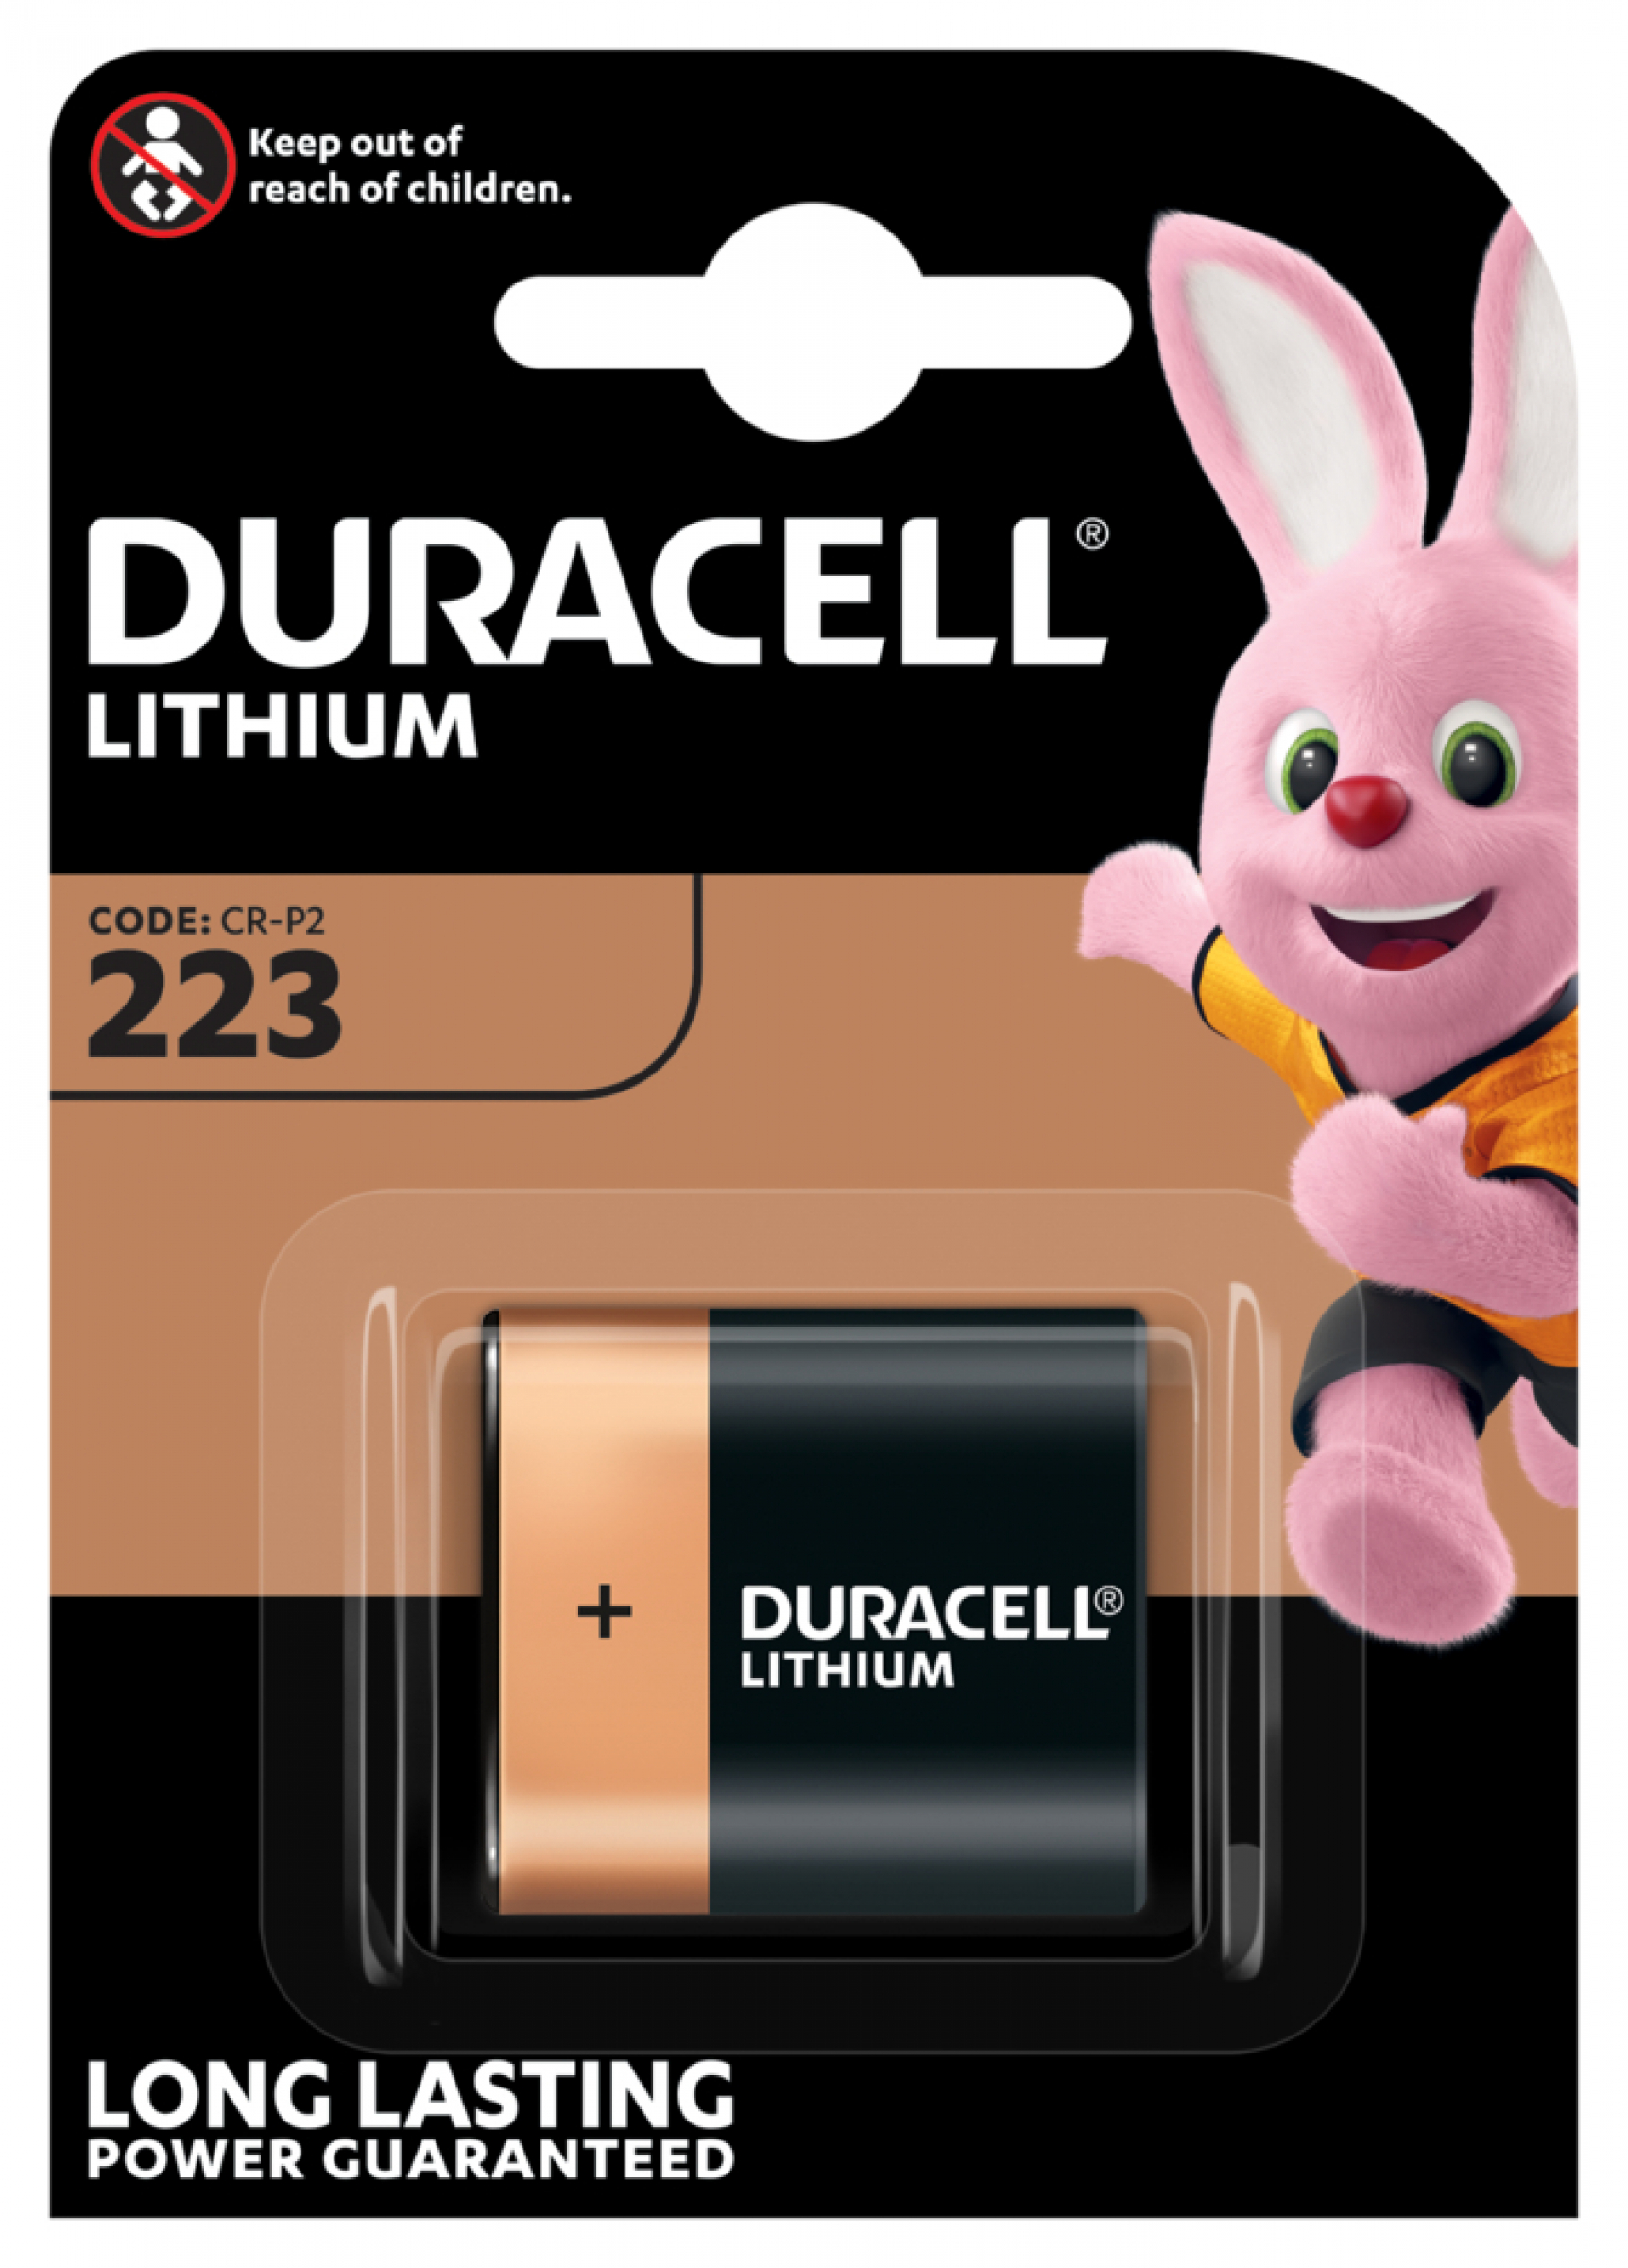 Duracell Lithium 223 CR-P2